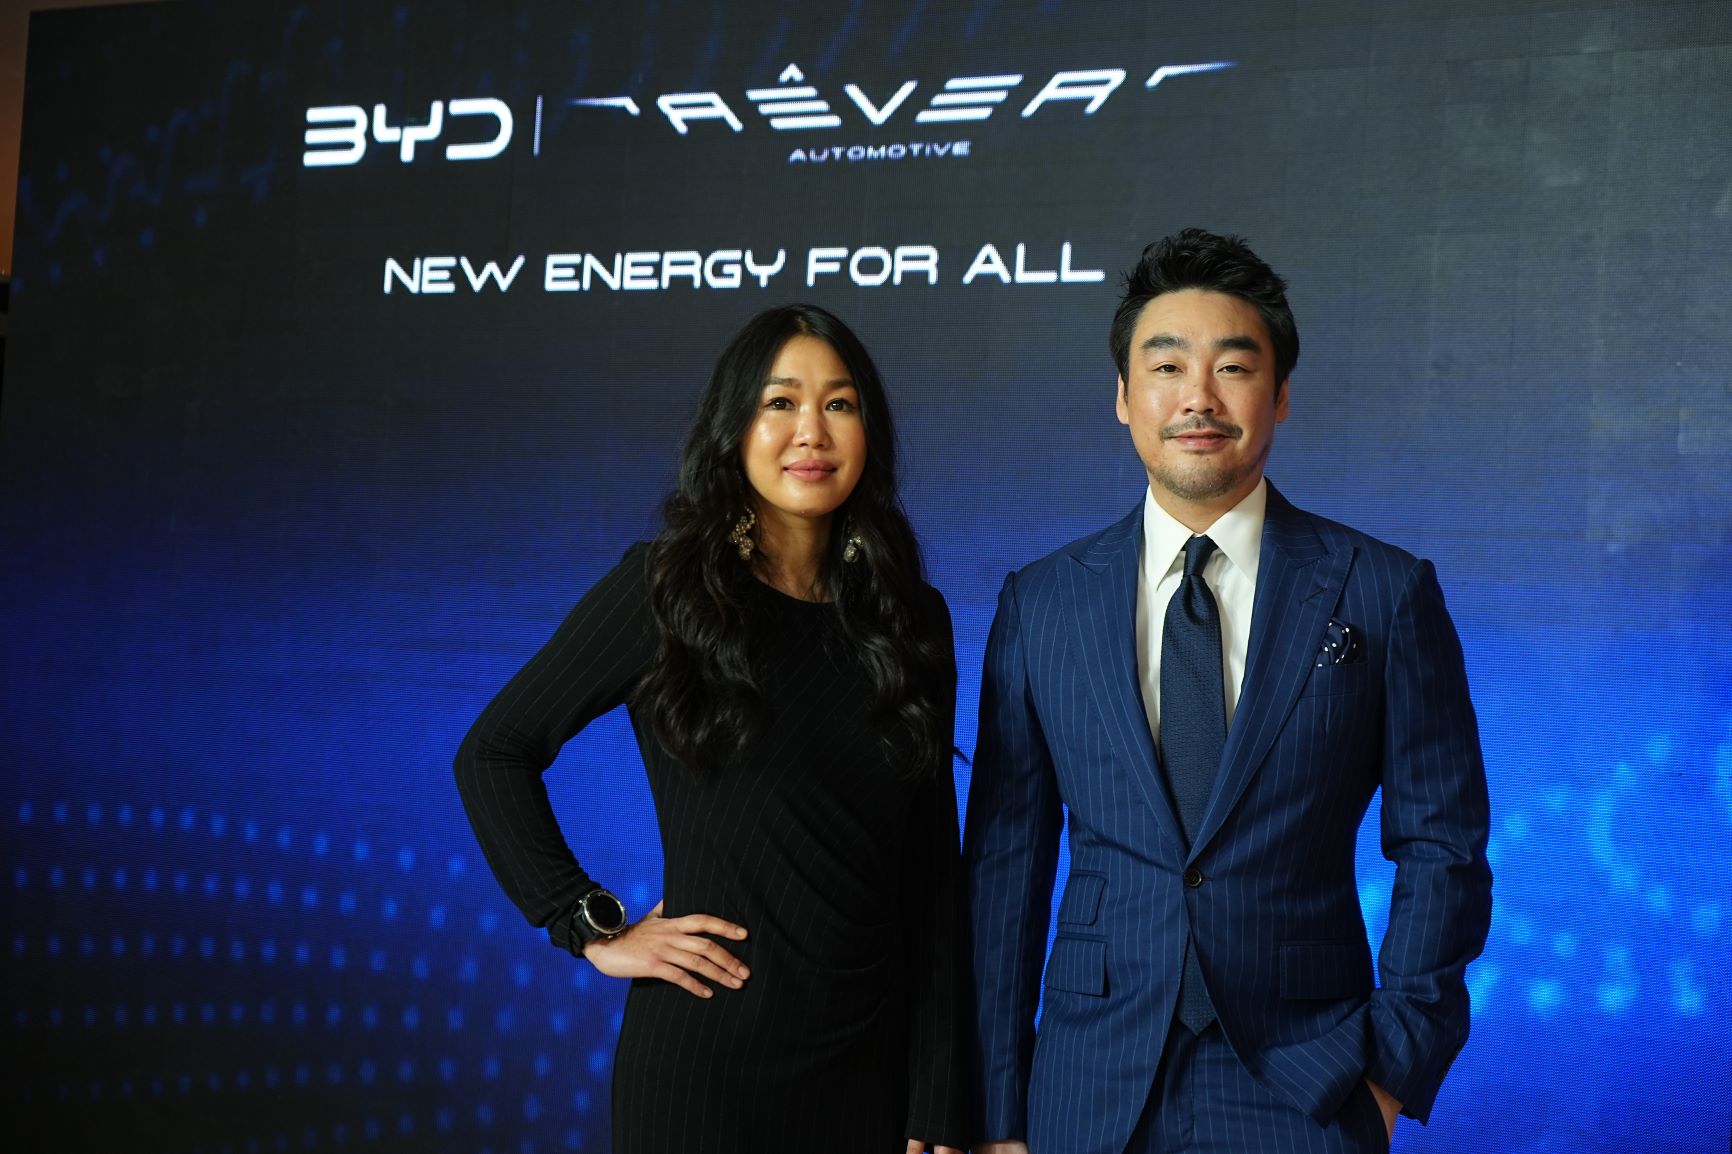 Rêver Automotive ลงทุนกว่า 3,000 ล้านบาท นำ BYD แบรนด์ระดับโลกรุกตลาดยานยนต์พลังงานใหม่ในไทย